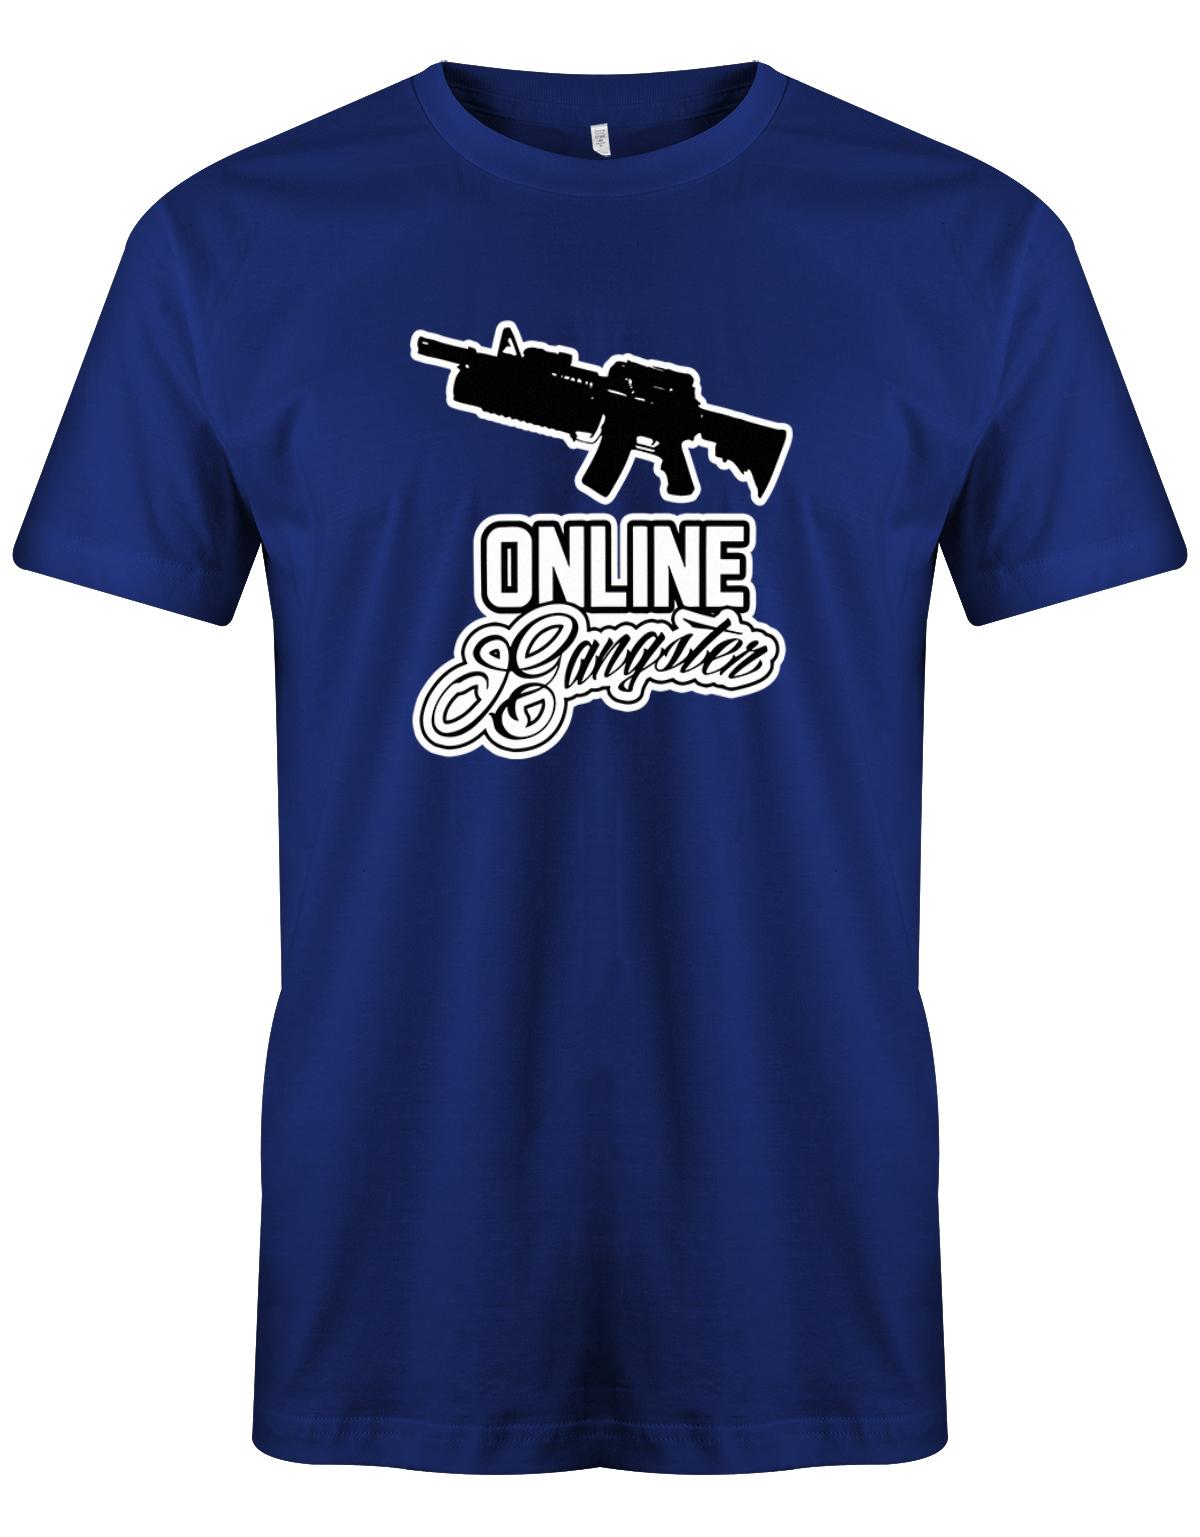 Online-Gangster-Herren-Shirt-Royalblau